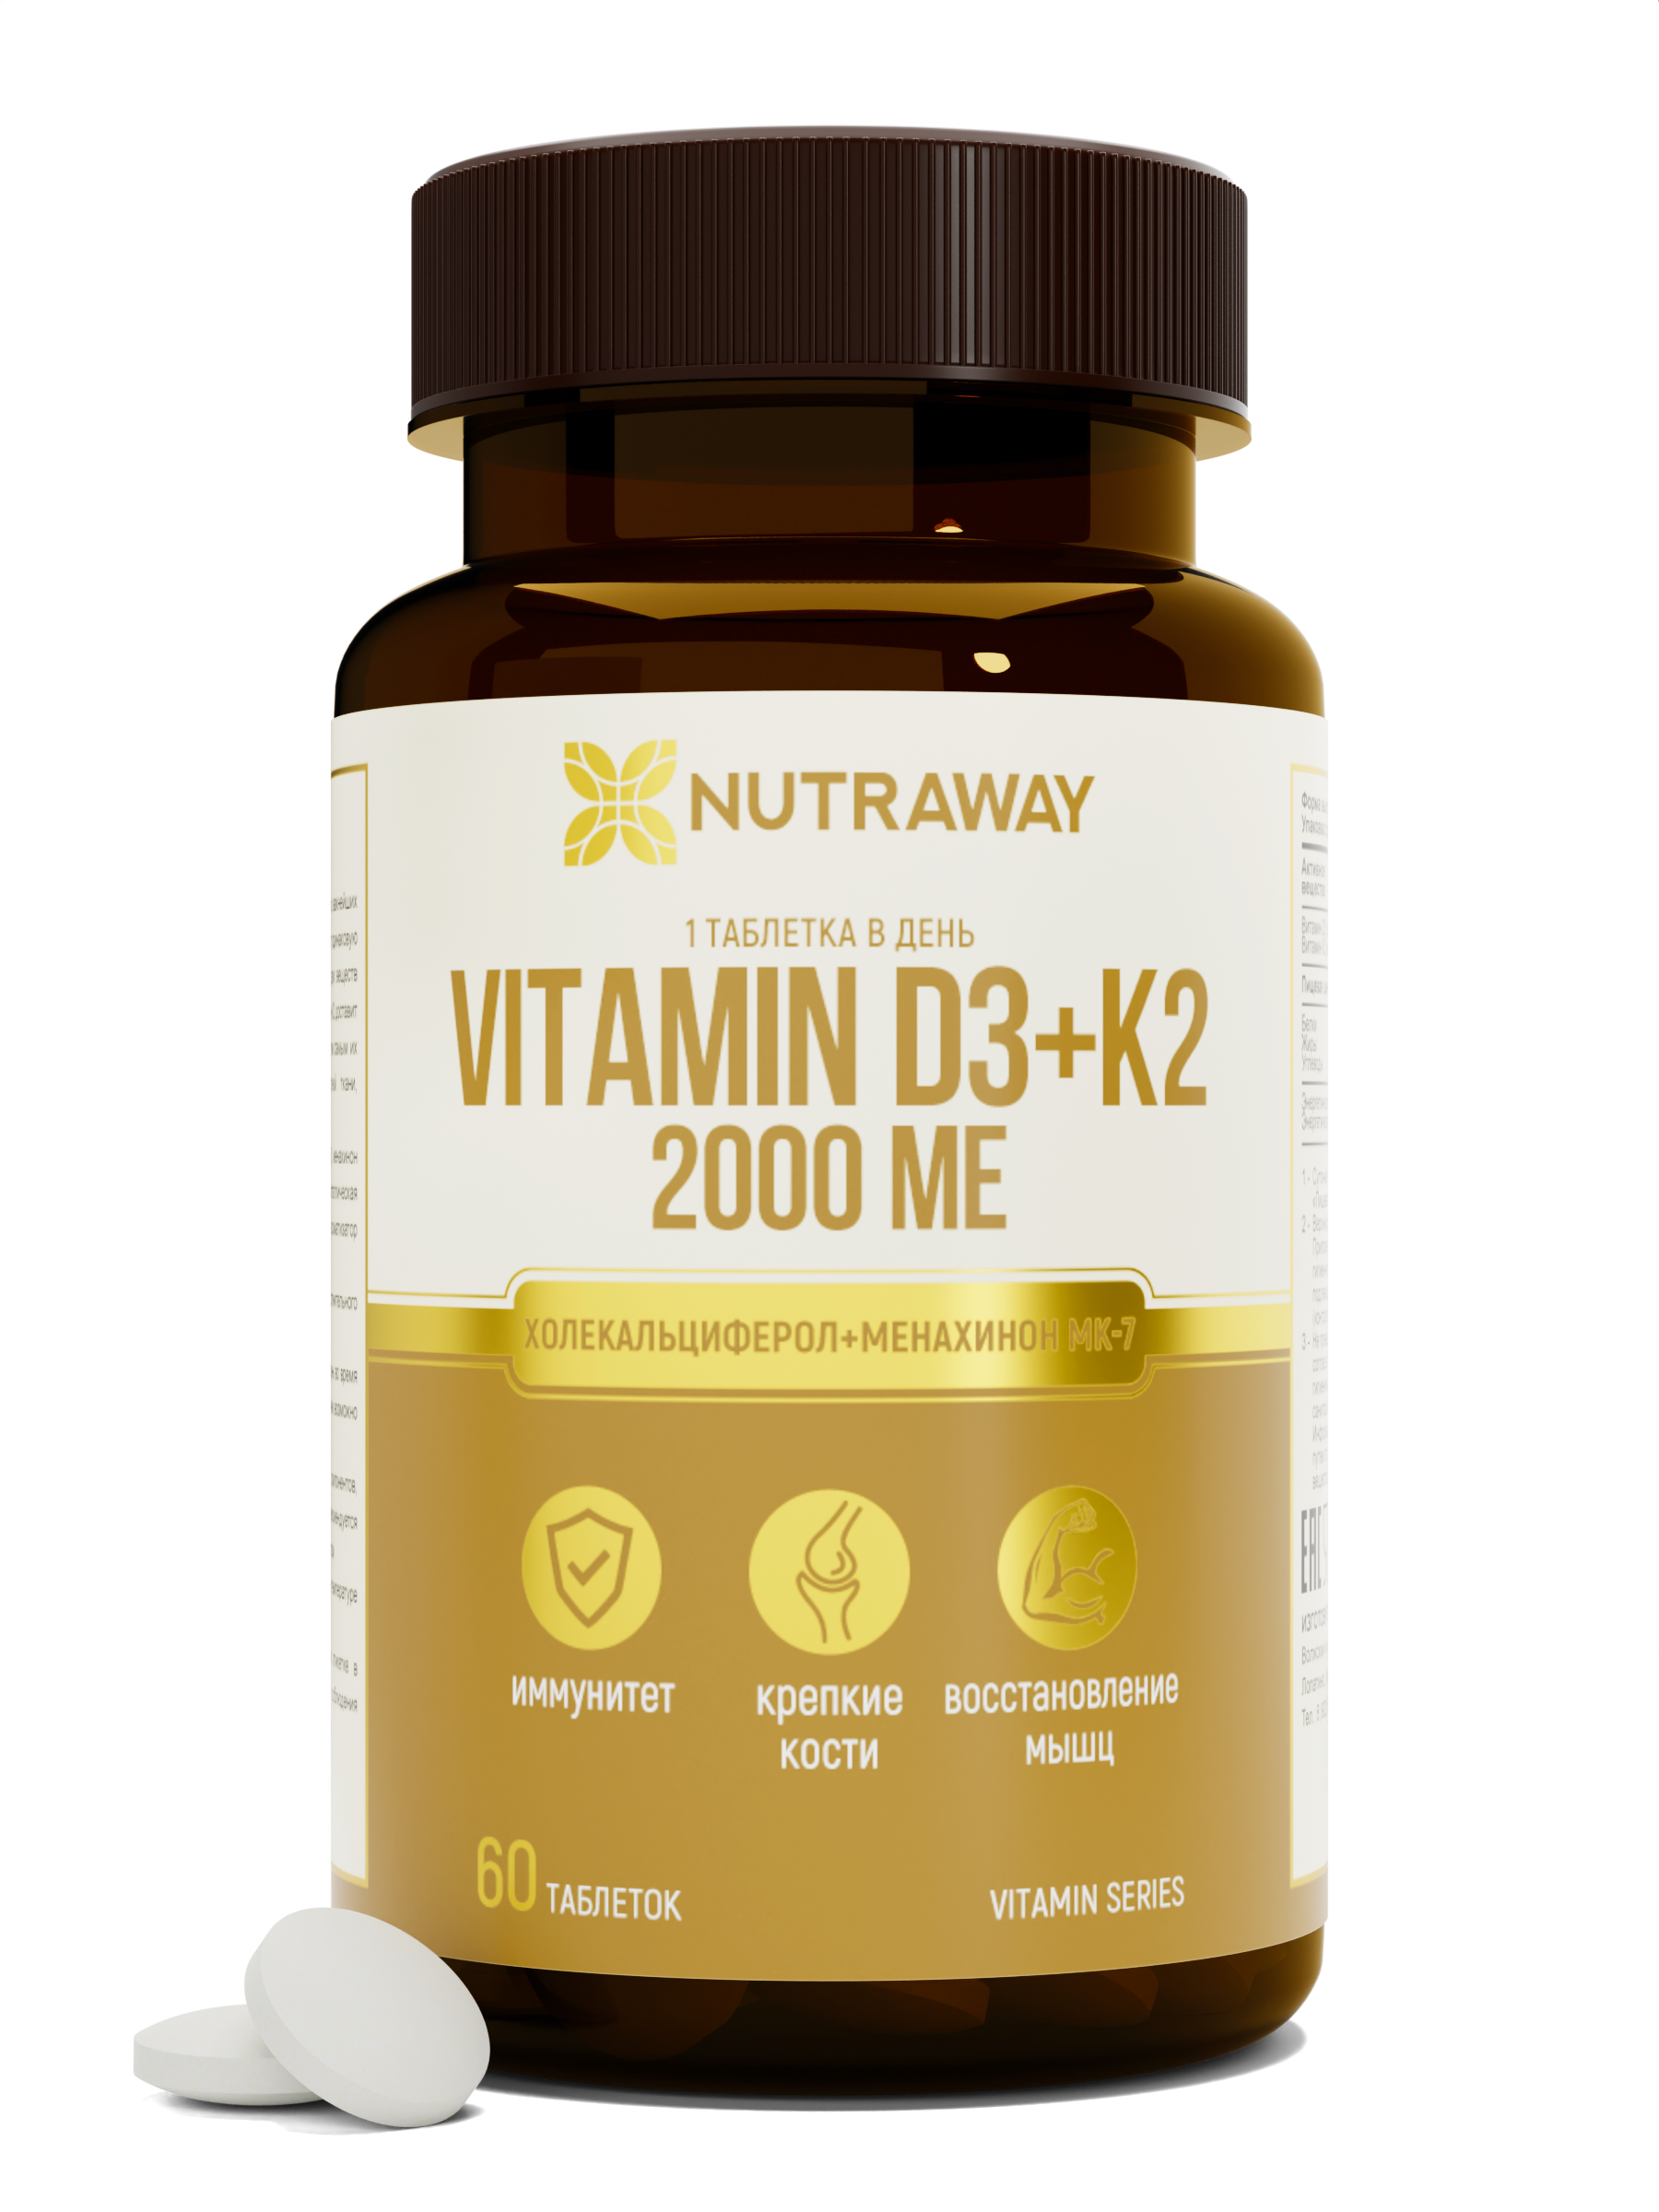 Купить Витамин Д3+К2 NUTRAWAY Vitamin D3+К2 таблетки 2000 ME 60 шт.